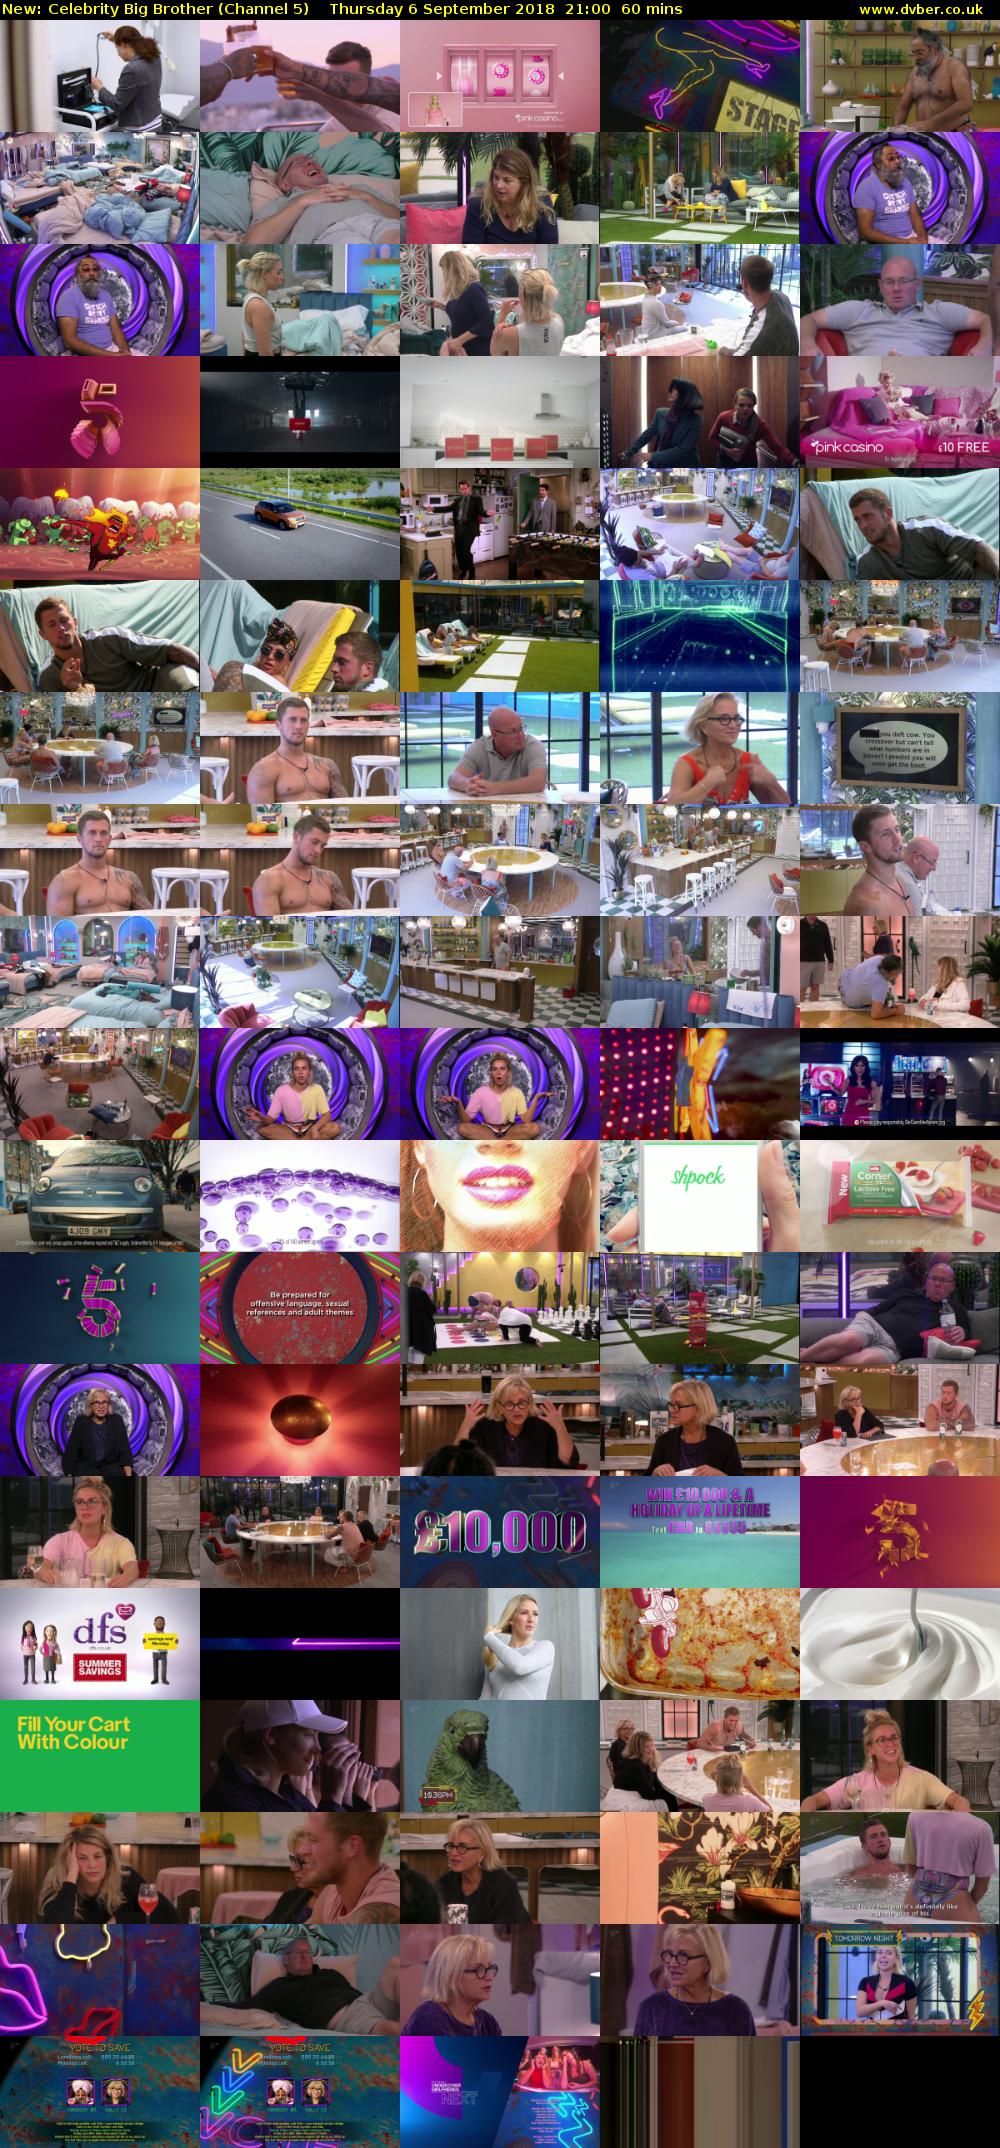 Celebrity Big Brother (Channel 5) Thursday 6 September 2018 21:00 - 22:00